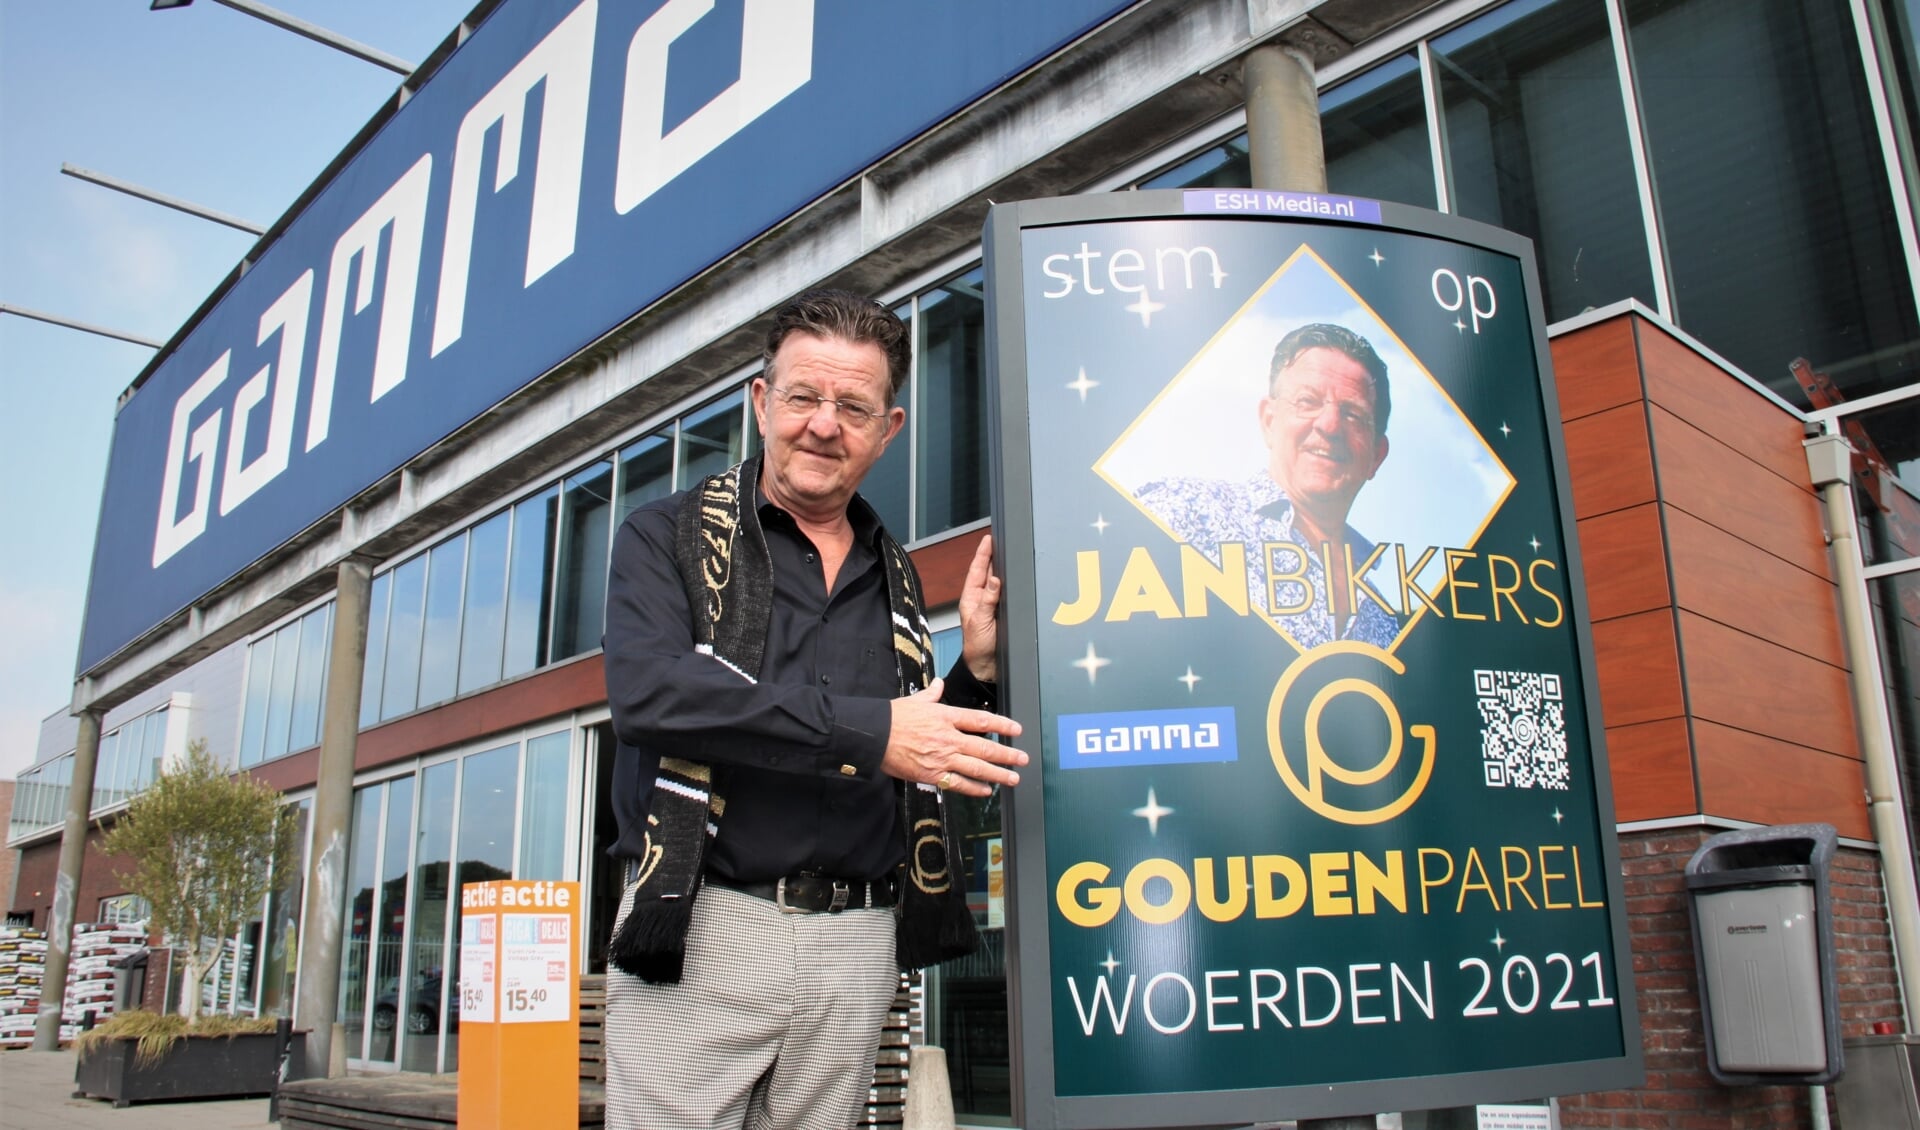 • Jan Bikkers voor zijn zaak aan de Molenvlietbaan.